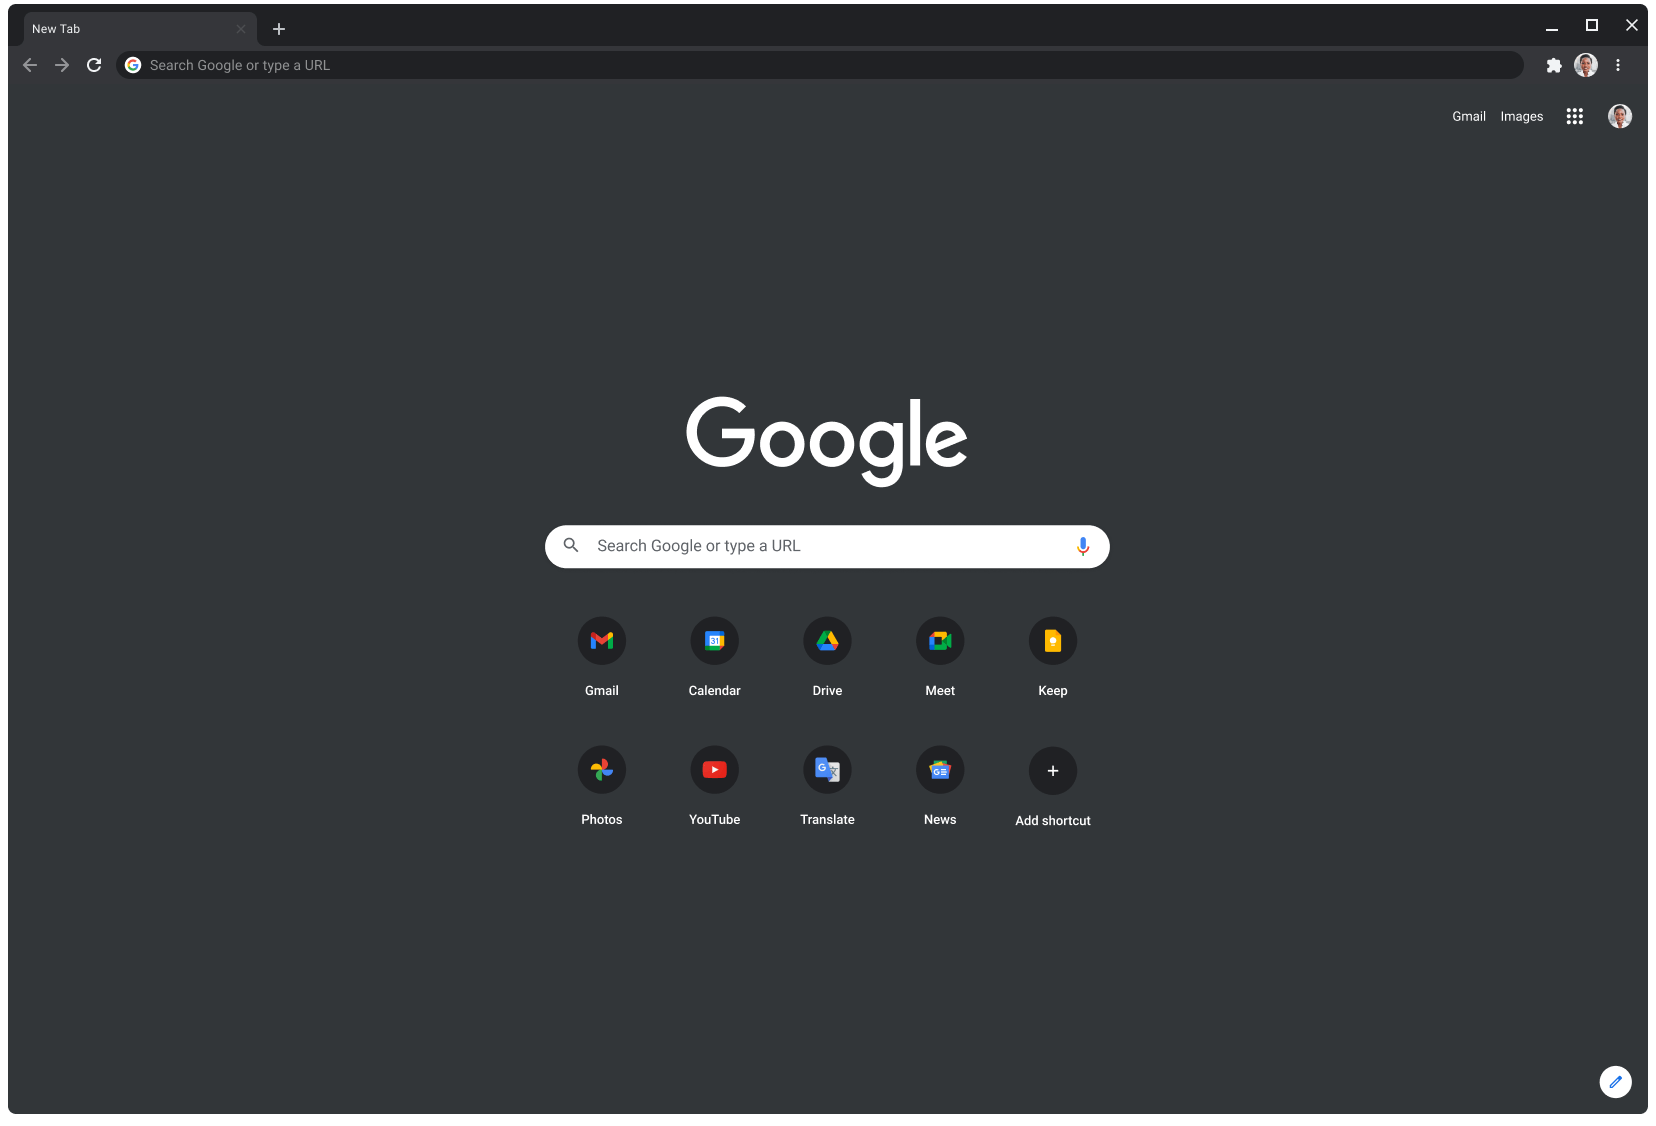 採用深色模式的 Chrome 瀏覽器視窗中顯示 Google.com 網頁。